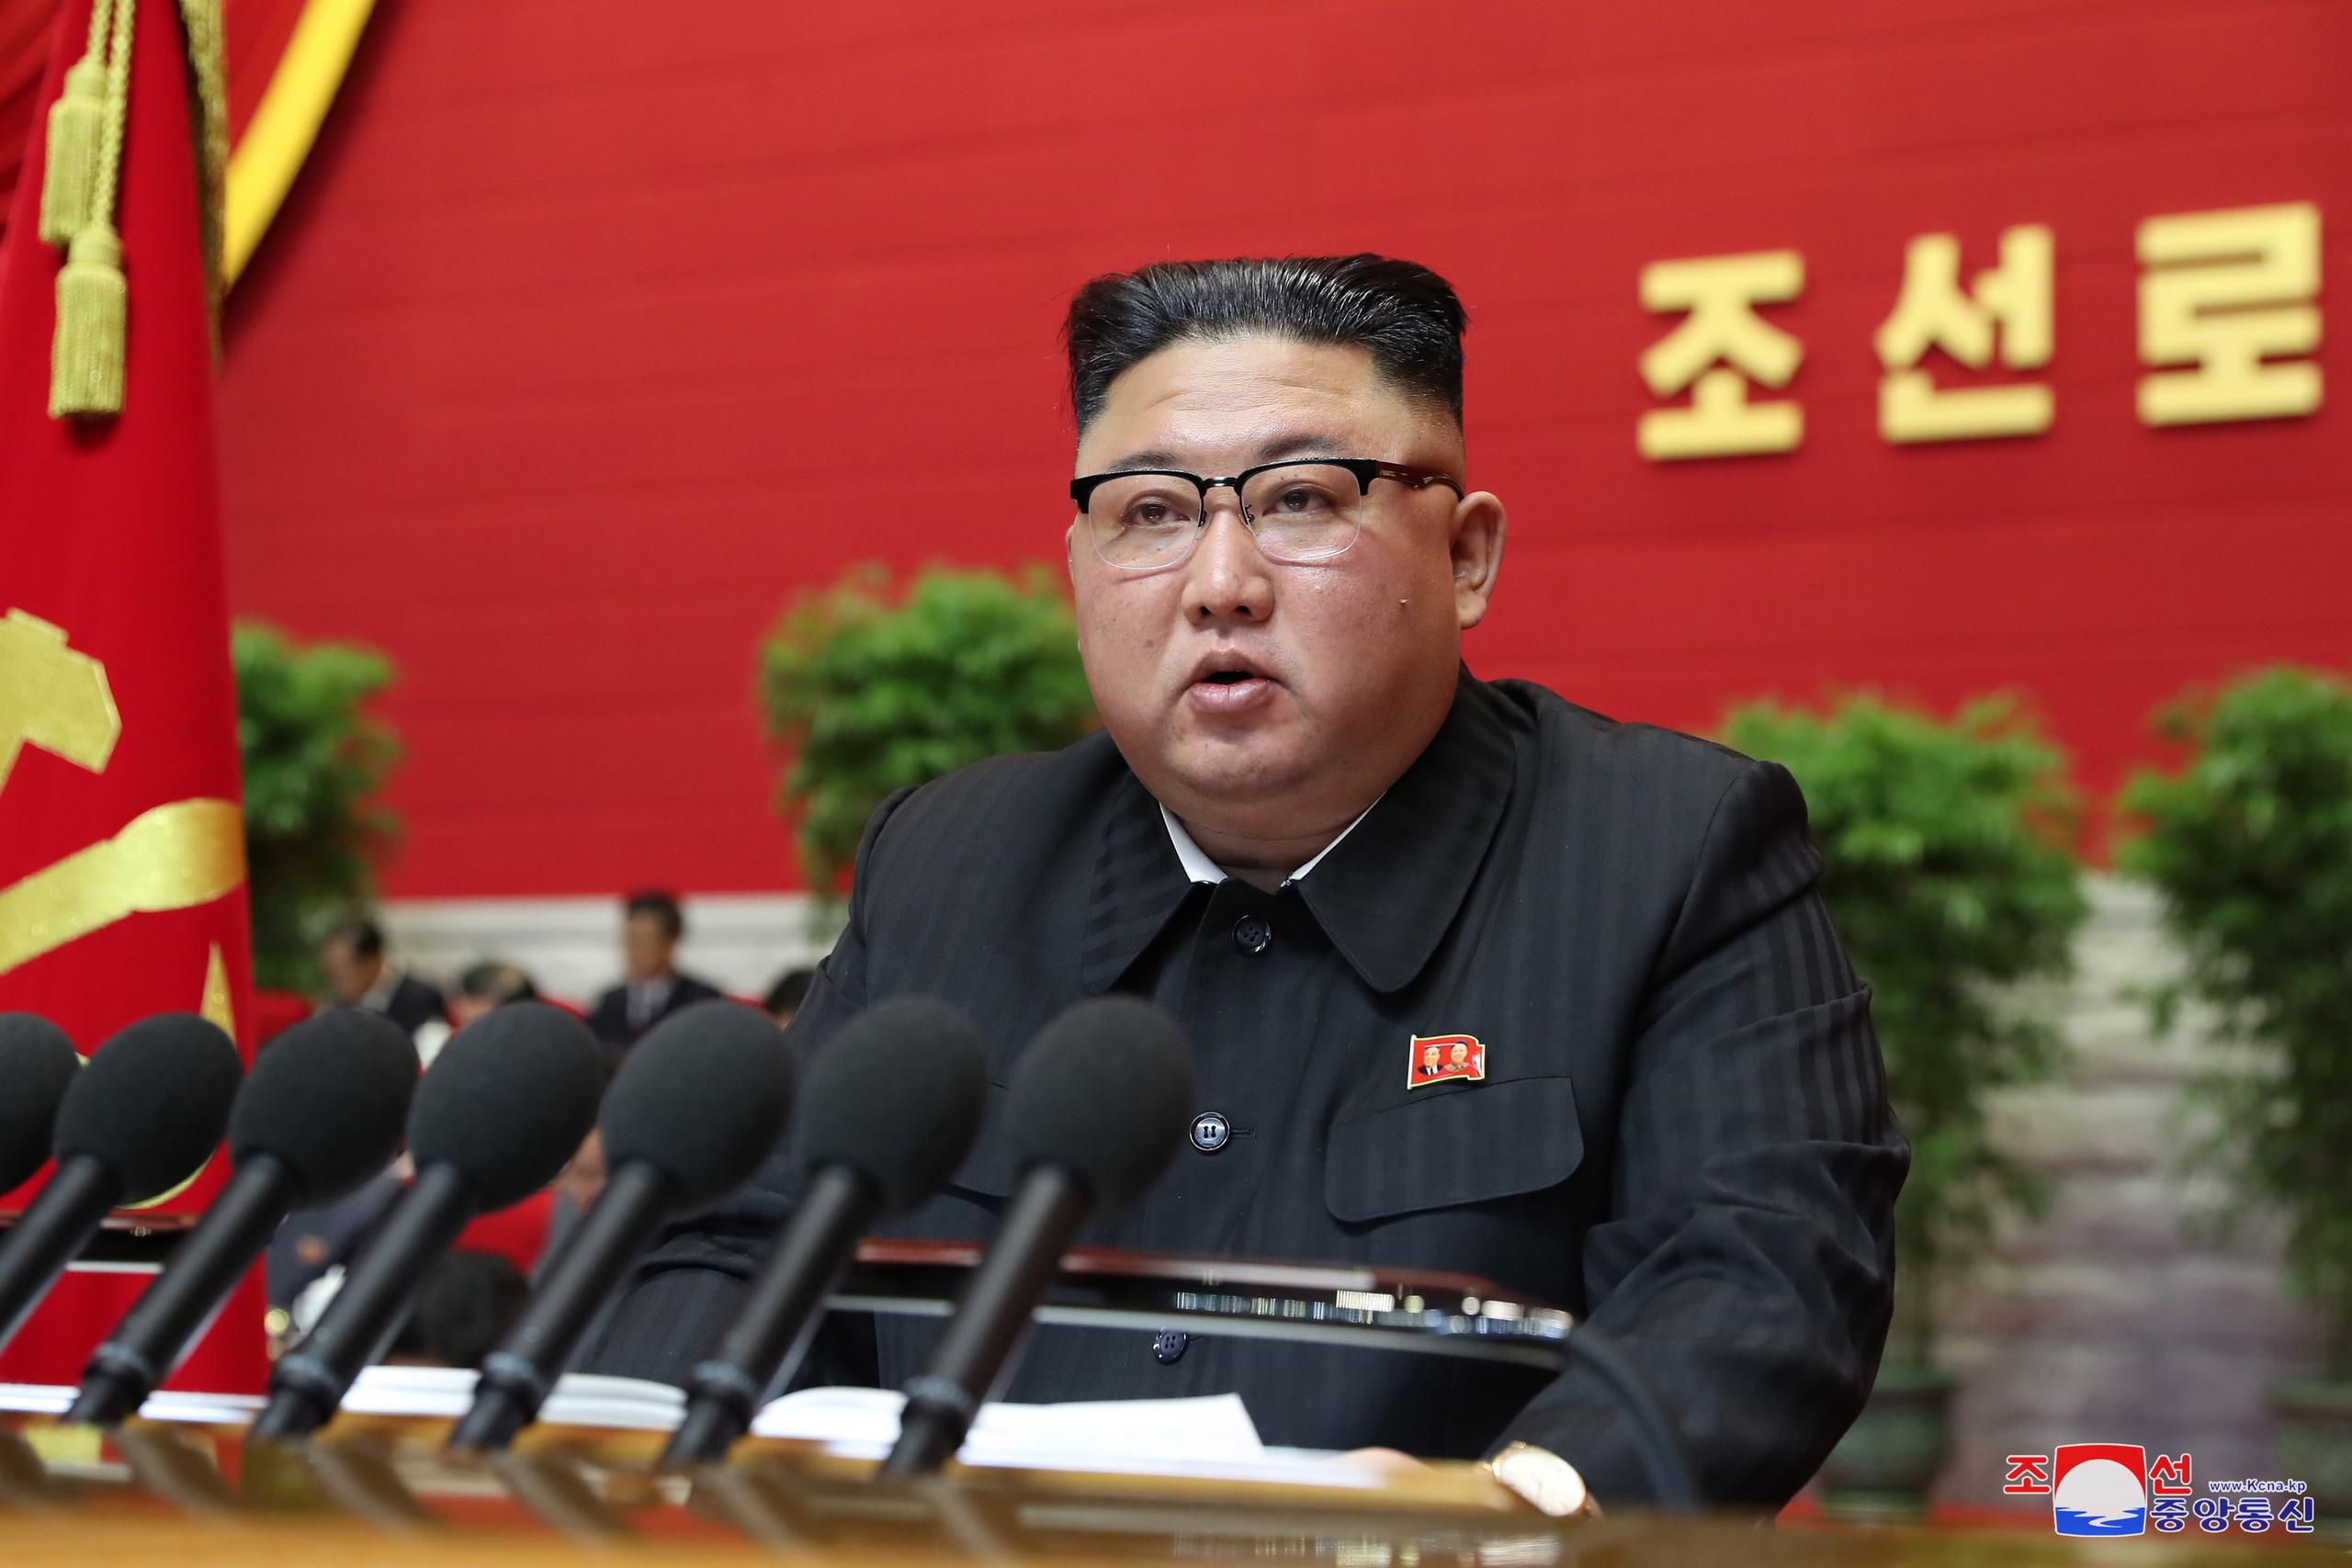 En la imagen el líder norcoreano, Kim Jong-un.